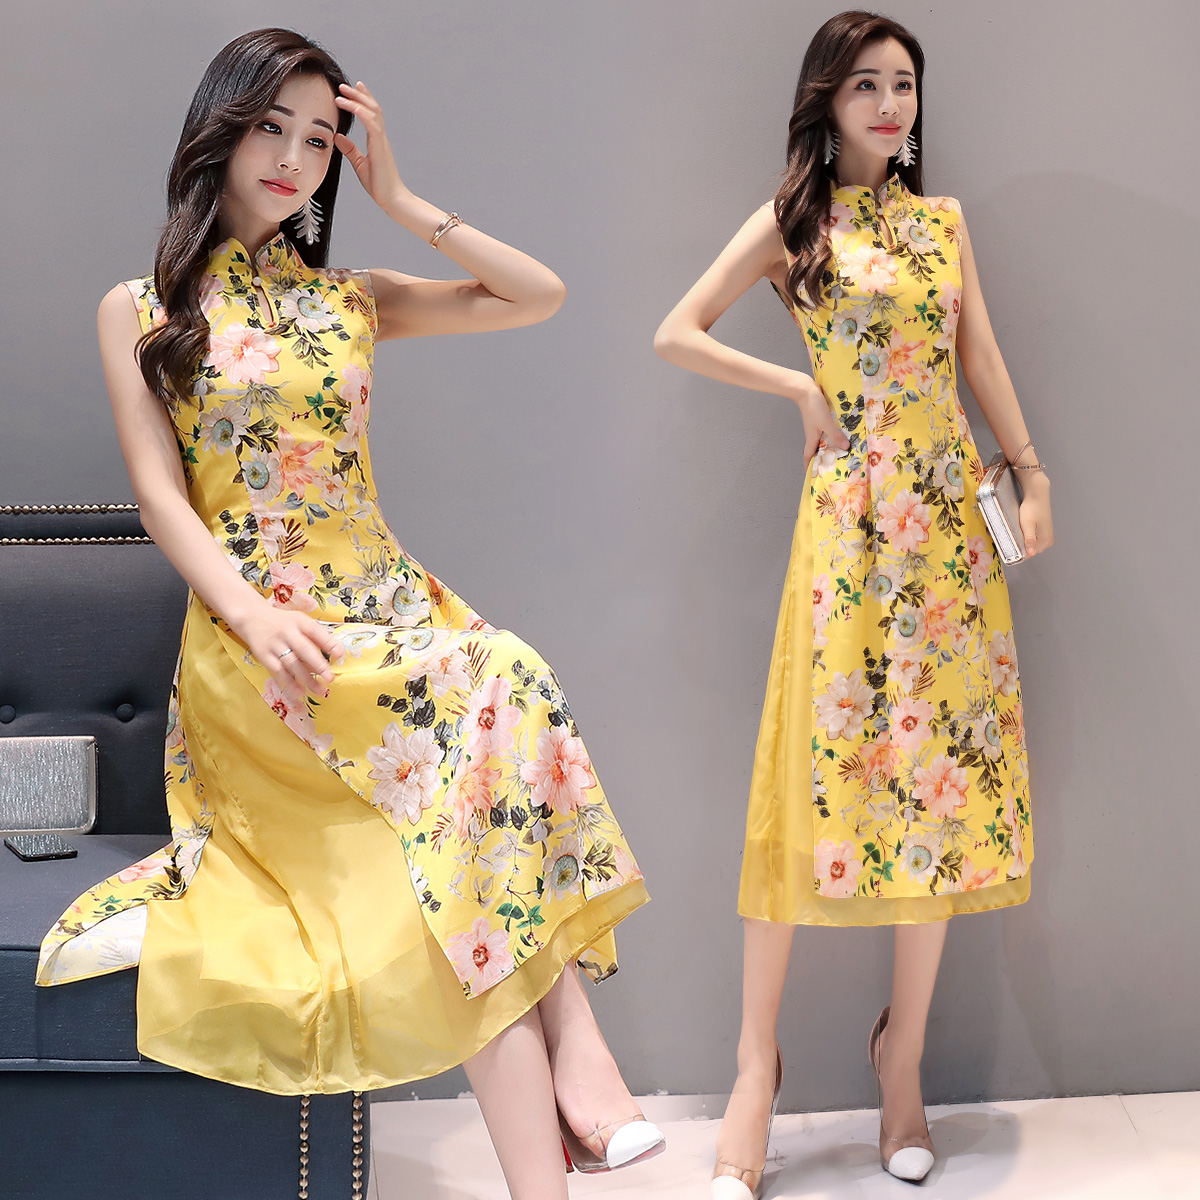 黄色碎花雪纺连衣裙女长裙2017夏季新款时尚气质韩版显瘦长款裙子